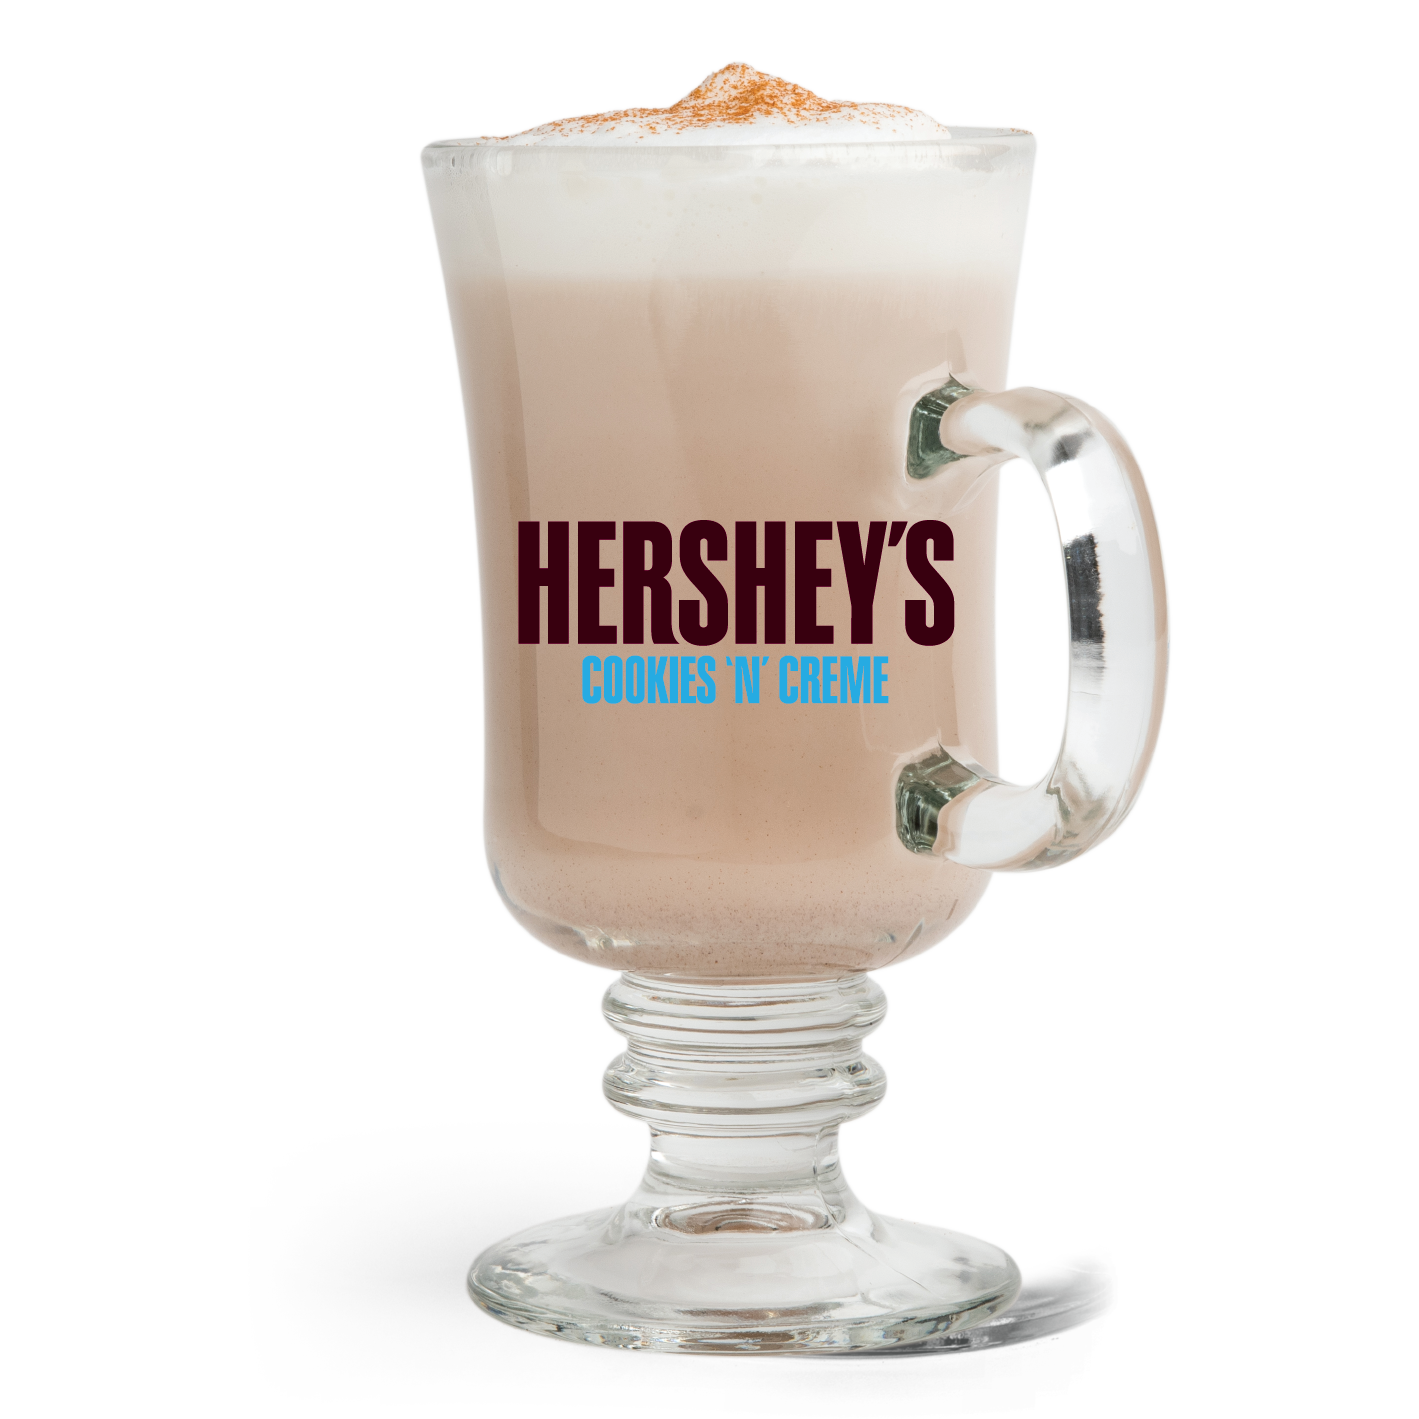 HERSHEY'S Cookies n’ Crème Hot Chocolate